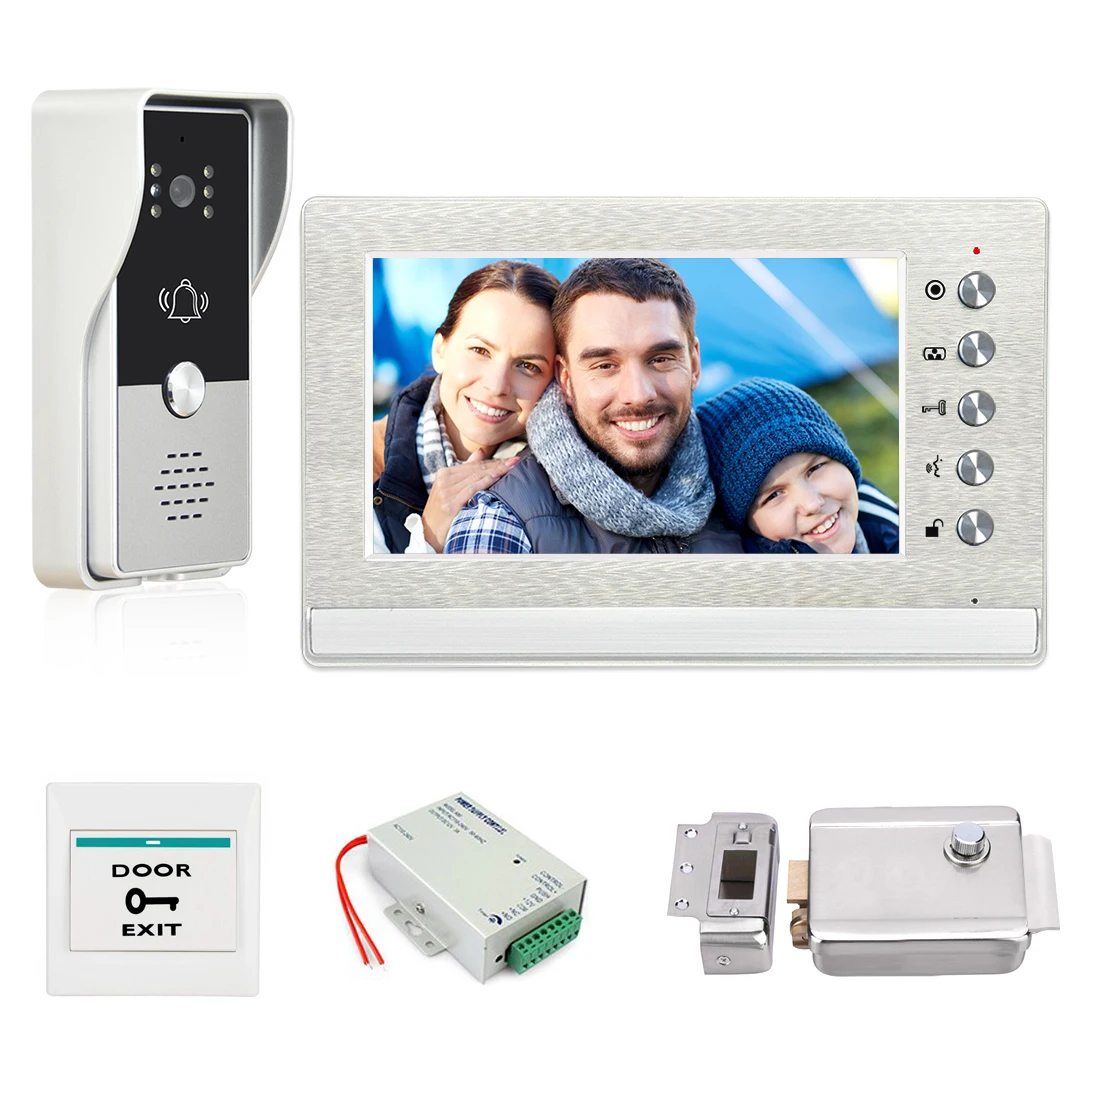 7 Inch Video Intercom Doorbell Kits for Home Security + Electric Lock+ Power Supply+ Door Exit + Video Door Phone System Unlock